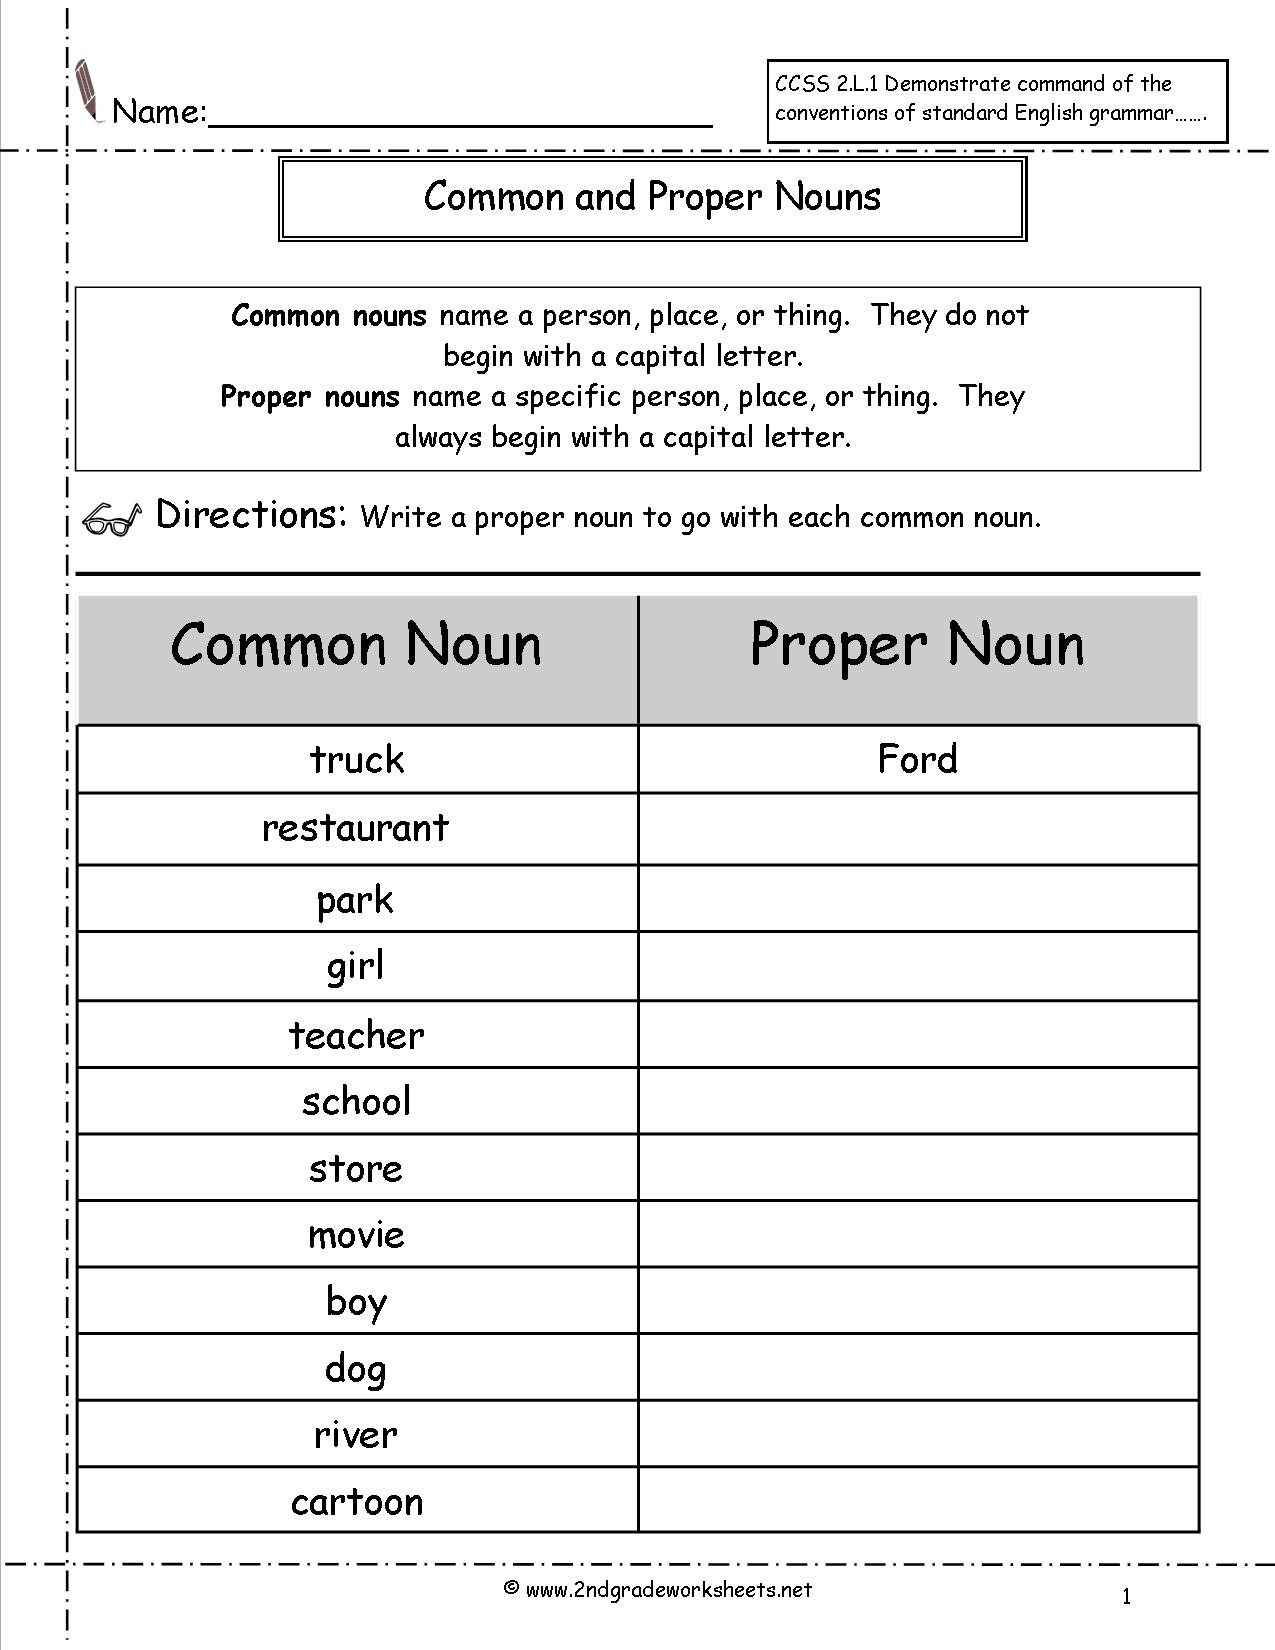 Proper Noun Worksheets For Grade 5